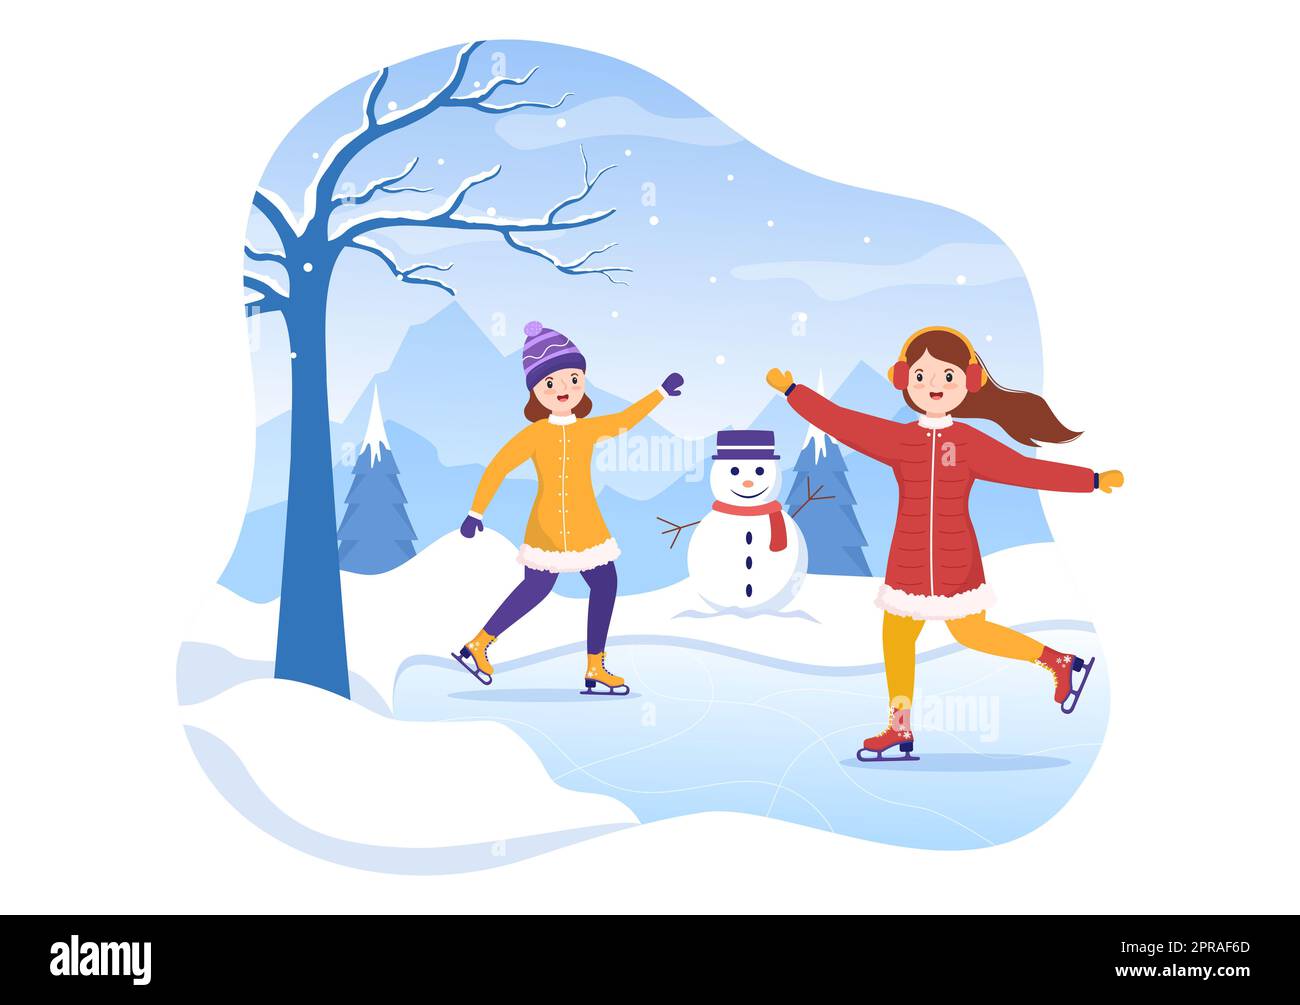 Patinage sur glace dessin main dessin animé dessin animé à la main Illustration de l'hiver Fun activités de sport en plein air sur la patinoire avec vêtements d'extérieur saisonniers Banque D'Images